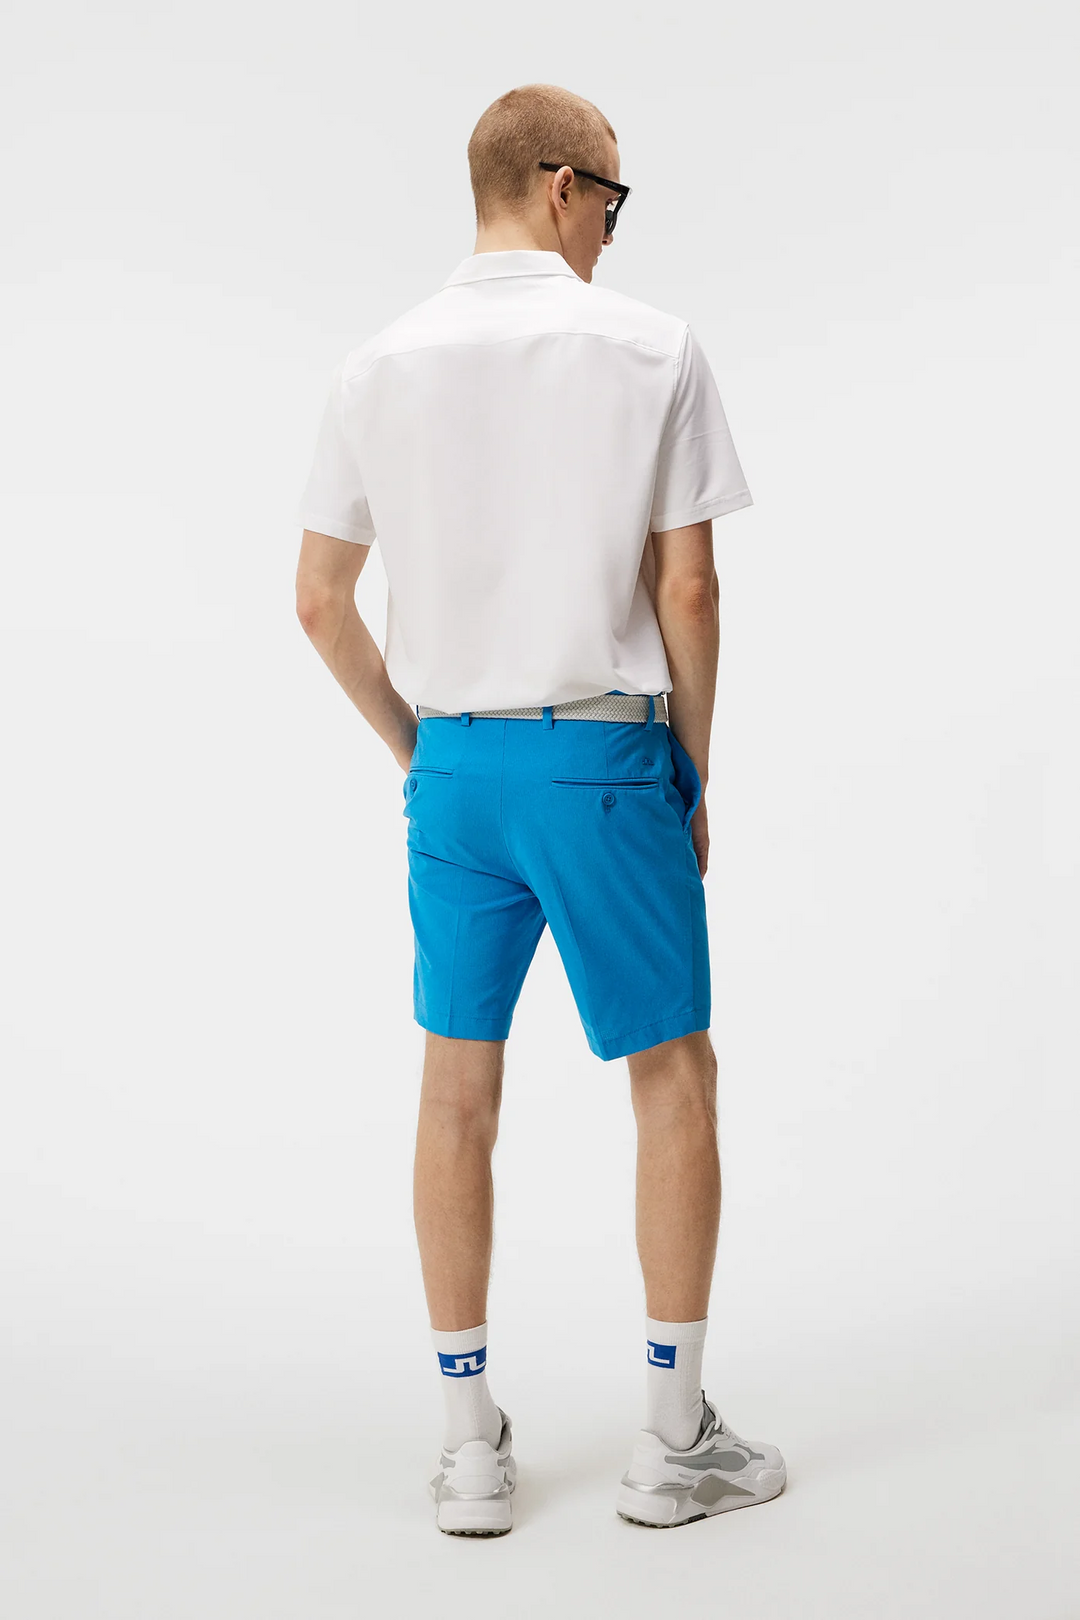 J.Lindeberg Mens Vent Shorts - BRILLIANT BLUE